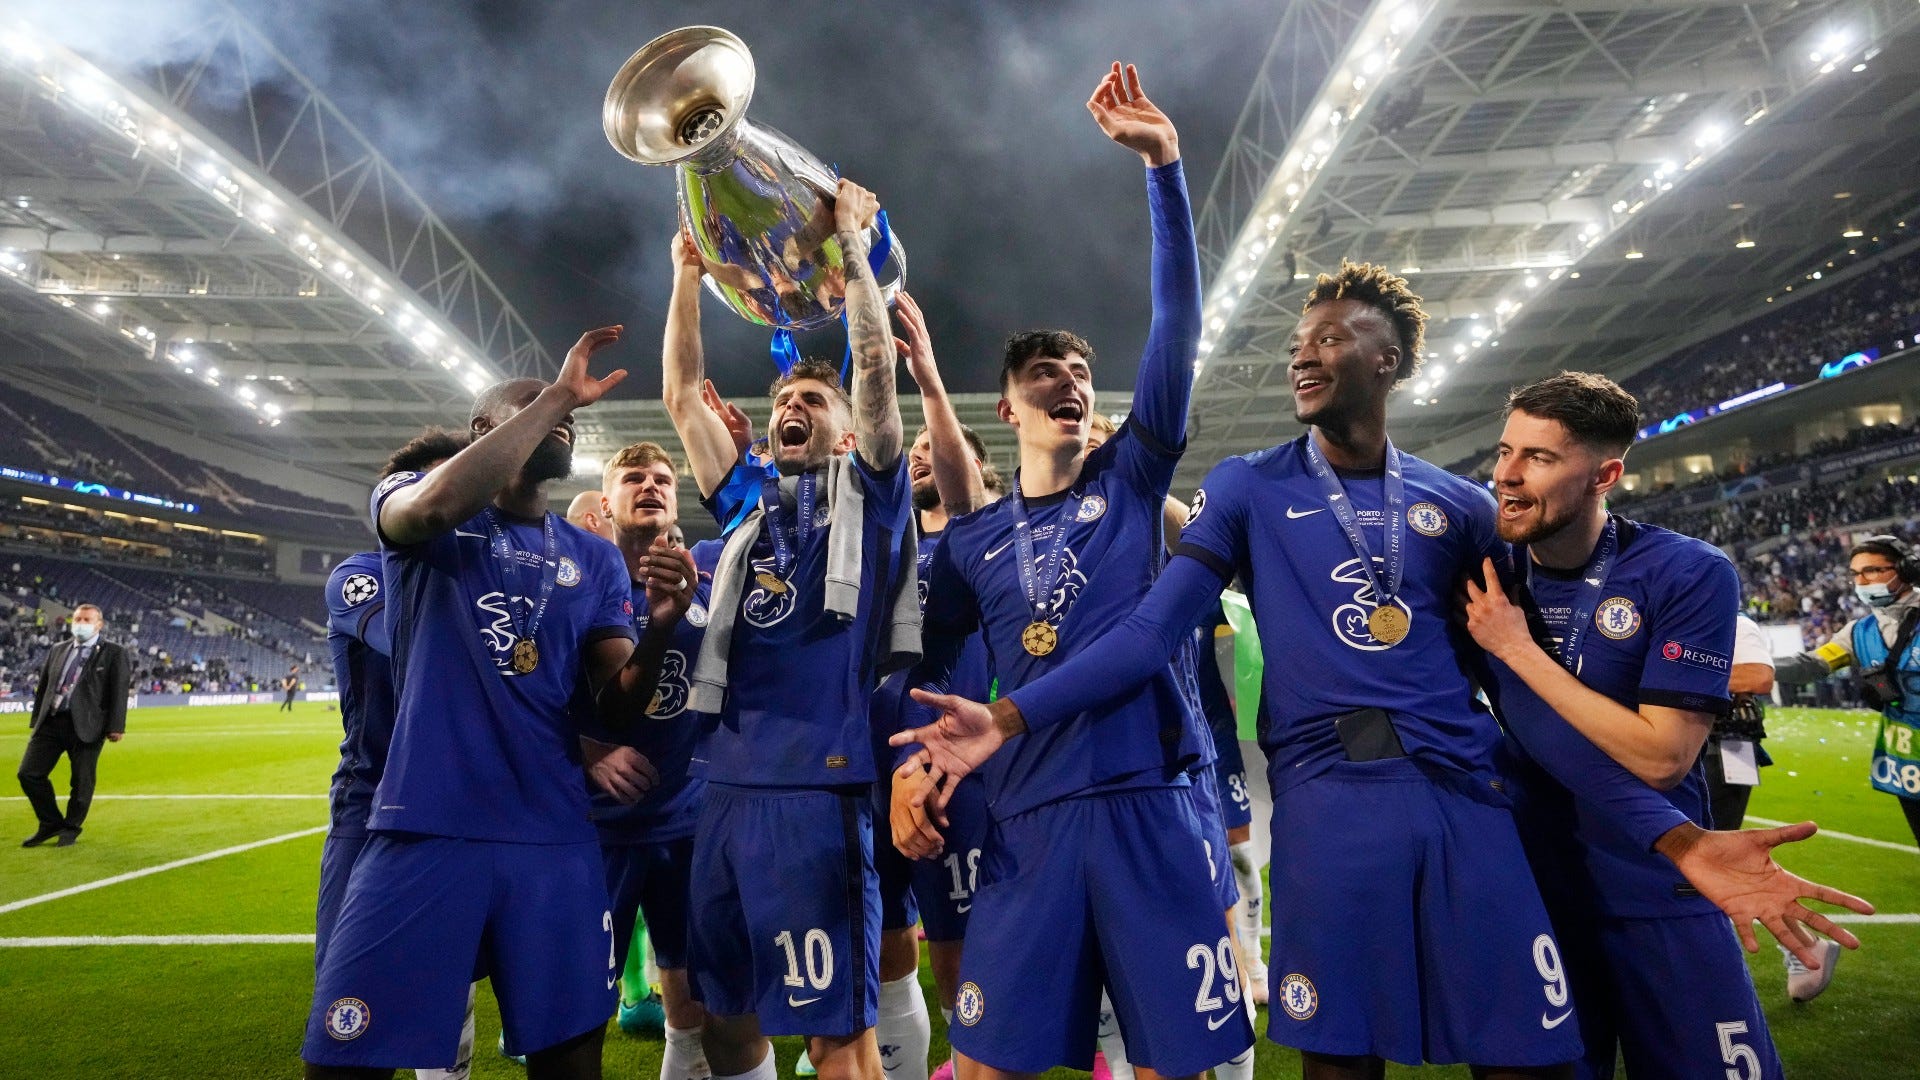 Chelsea Champions League trophy 2020-21